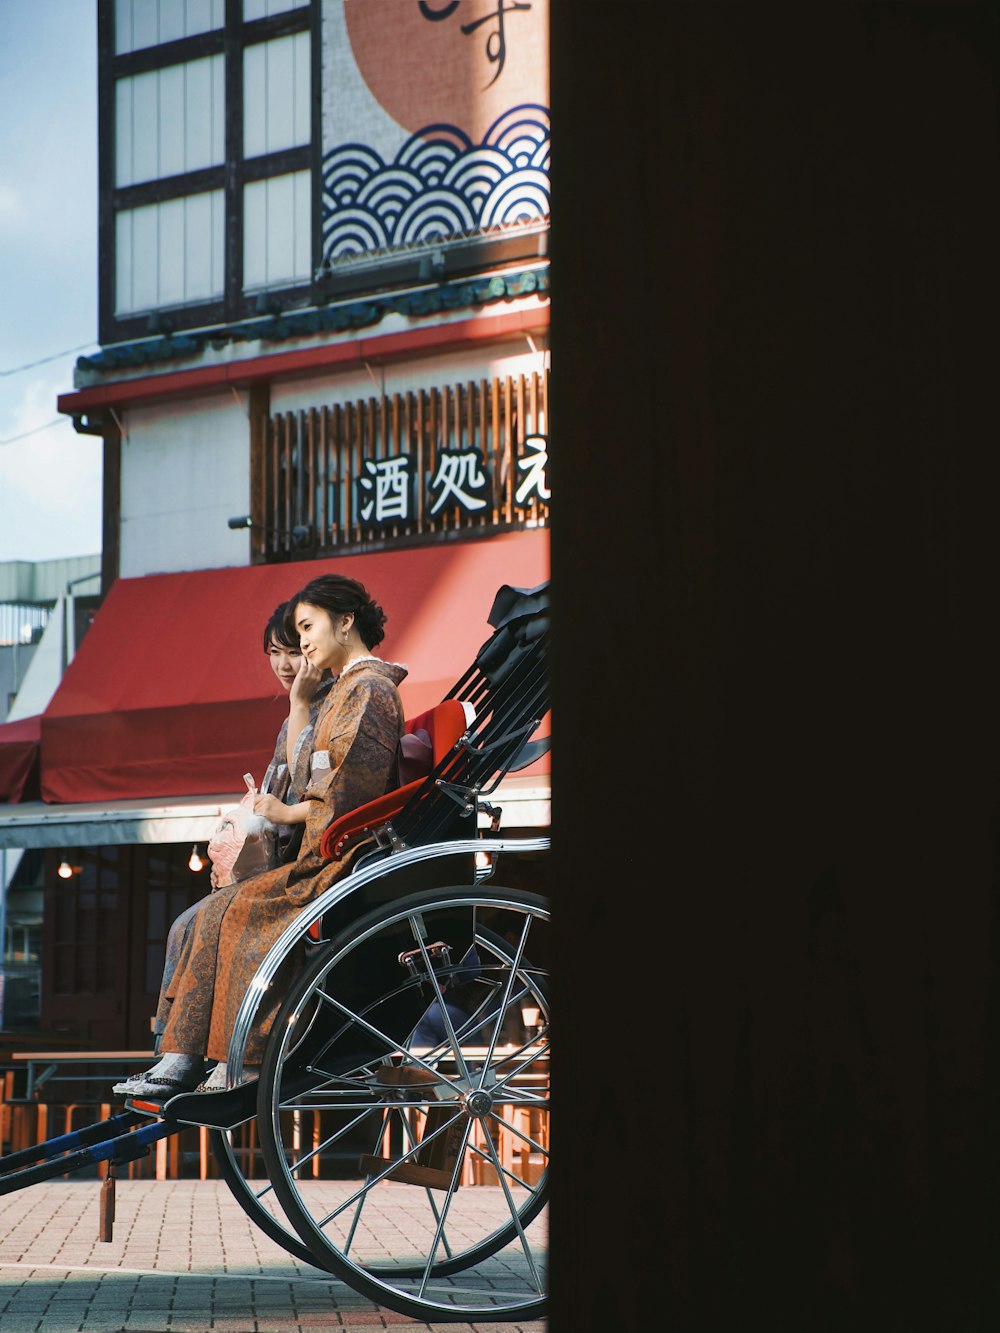 donna in vestito rosso che si siede sulla sedia a rotelle nera